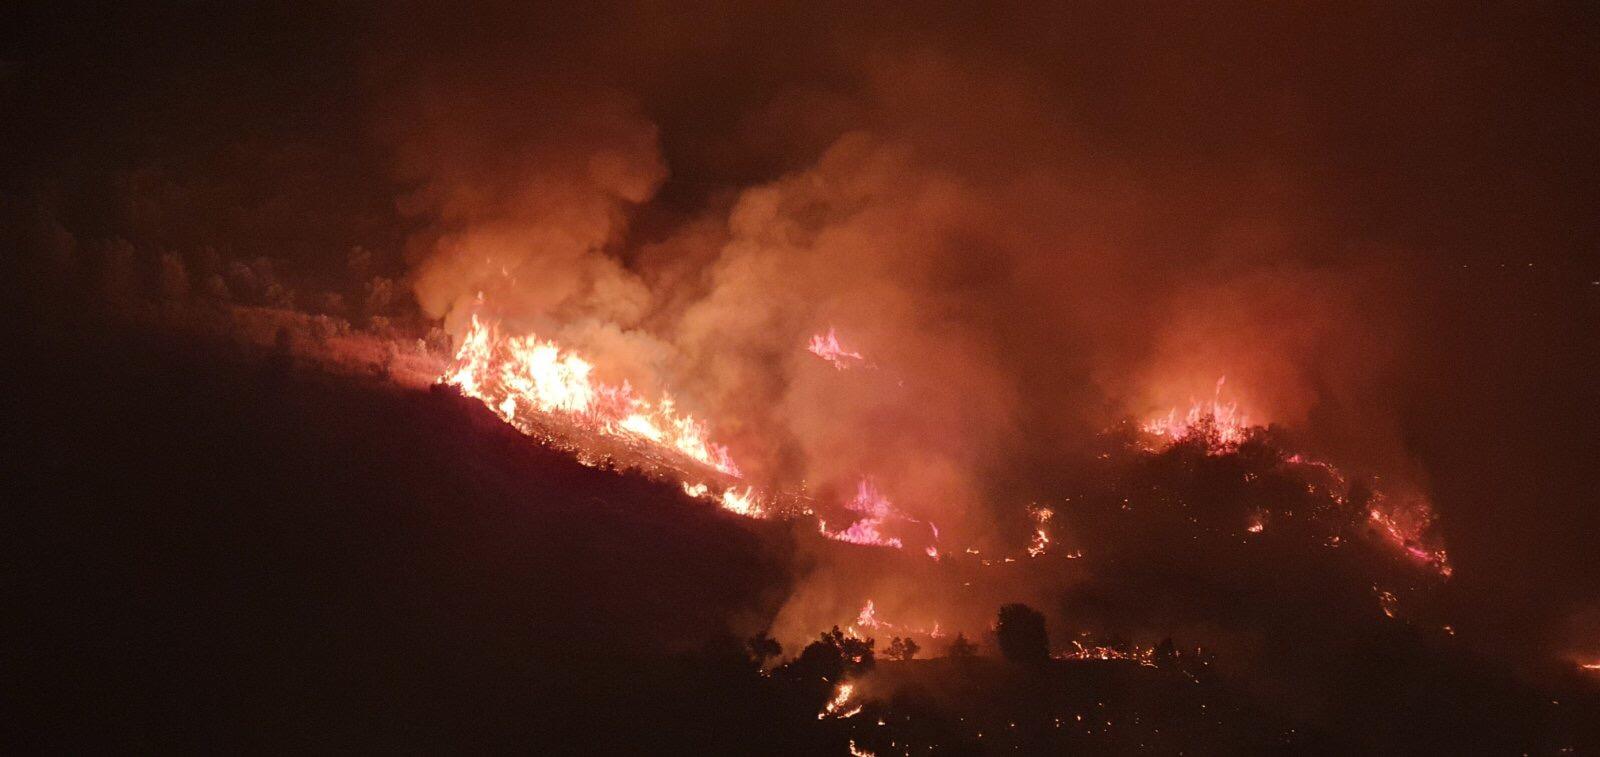 Ηλεία: Μεγάλη φωτιά σε δάσος στη Σμέρνα – Ξεπερνά τα 15 στρέμματα (βίντεο)